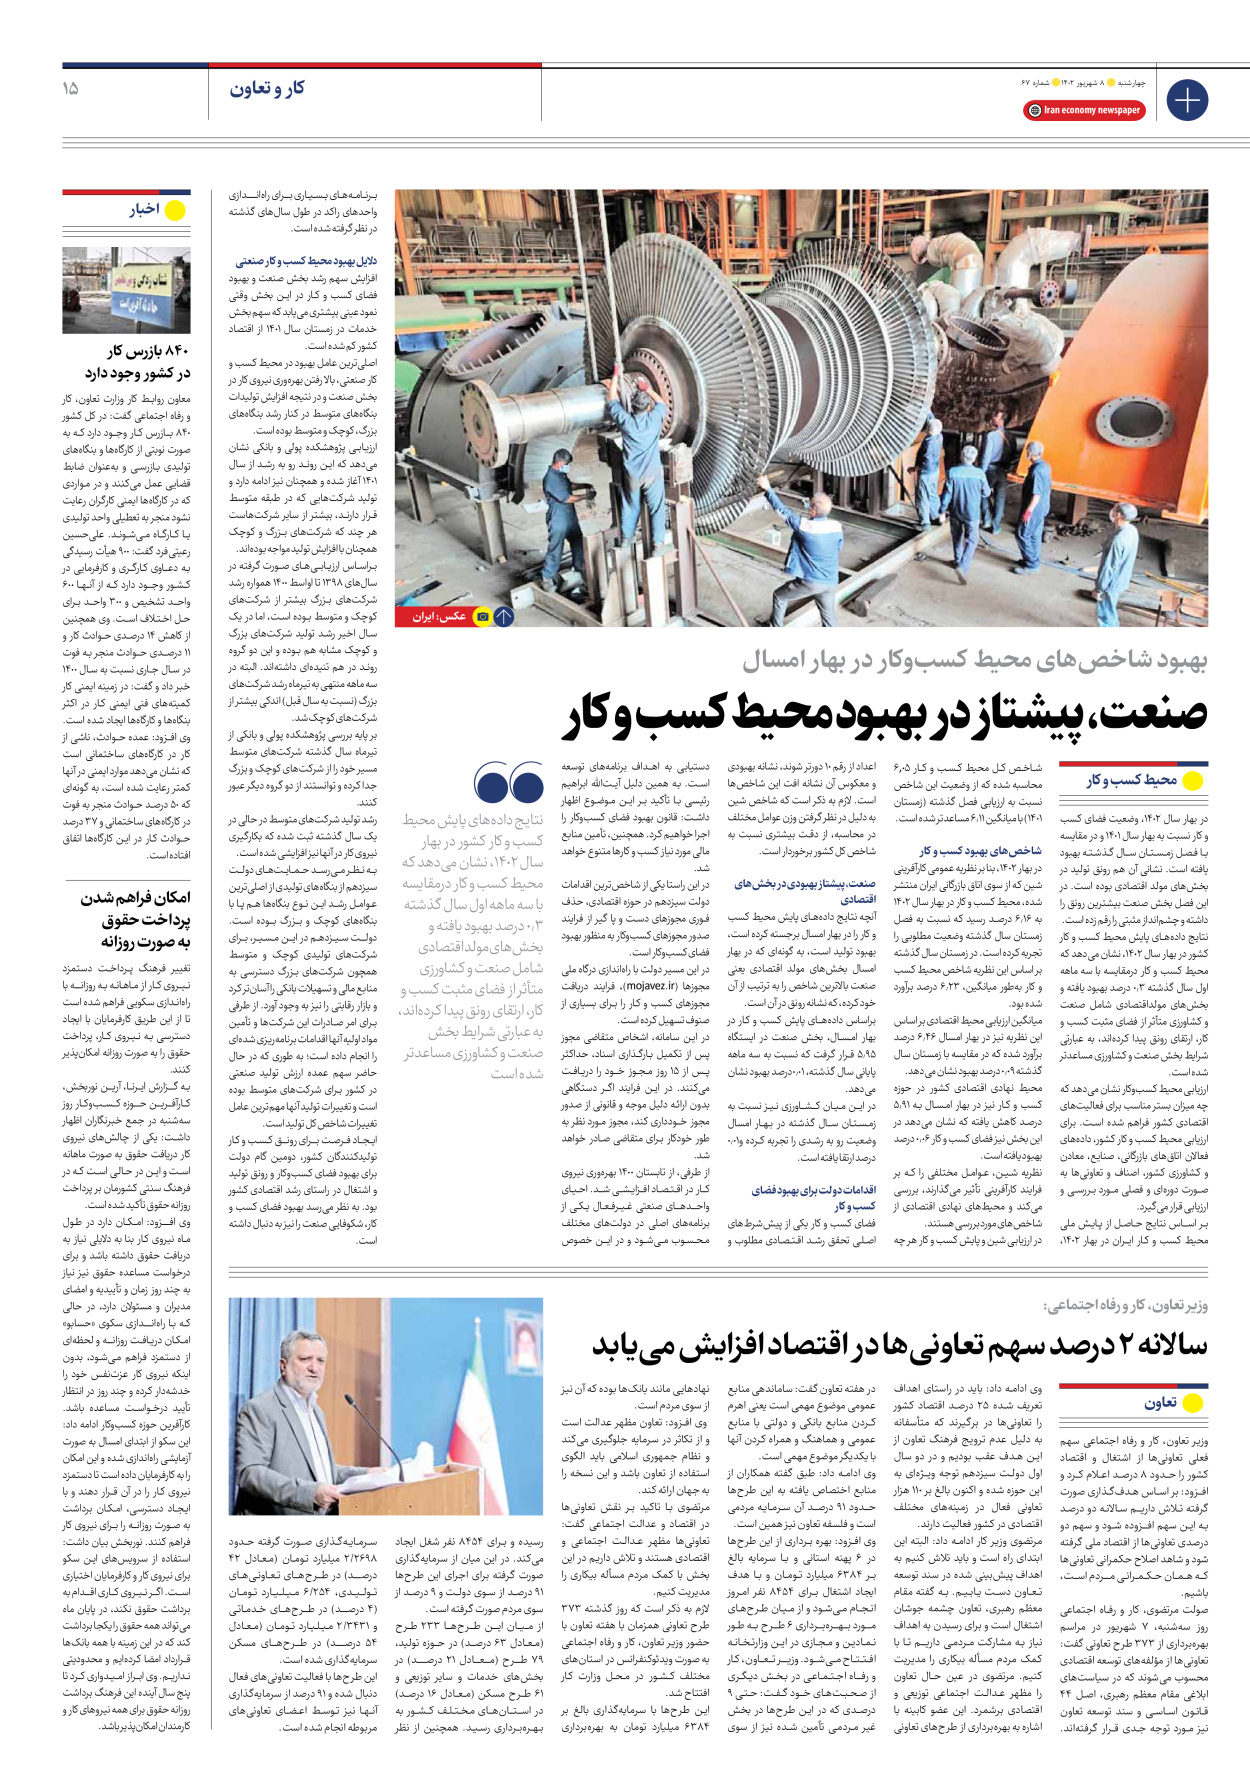 روزنامه ایران اقتصادی - شماره شصت و هفت - ۰۸ شهریور ۱۴۰۲ - صفحه ۱۵